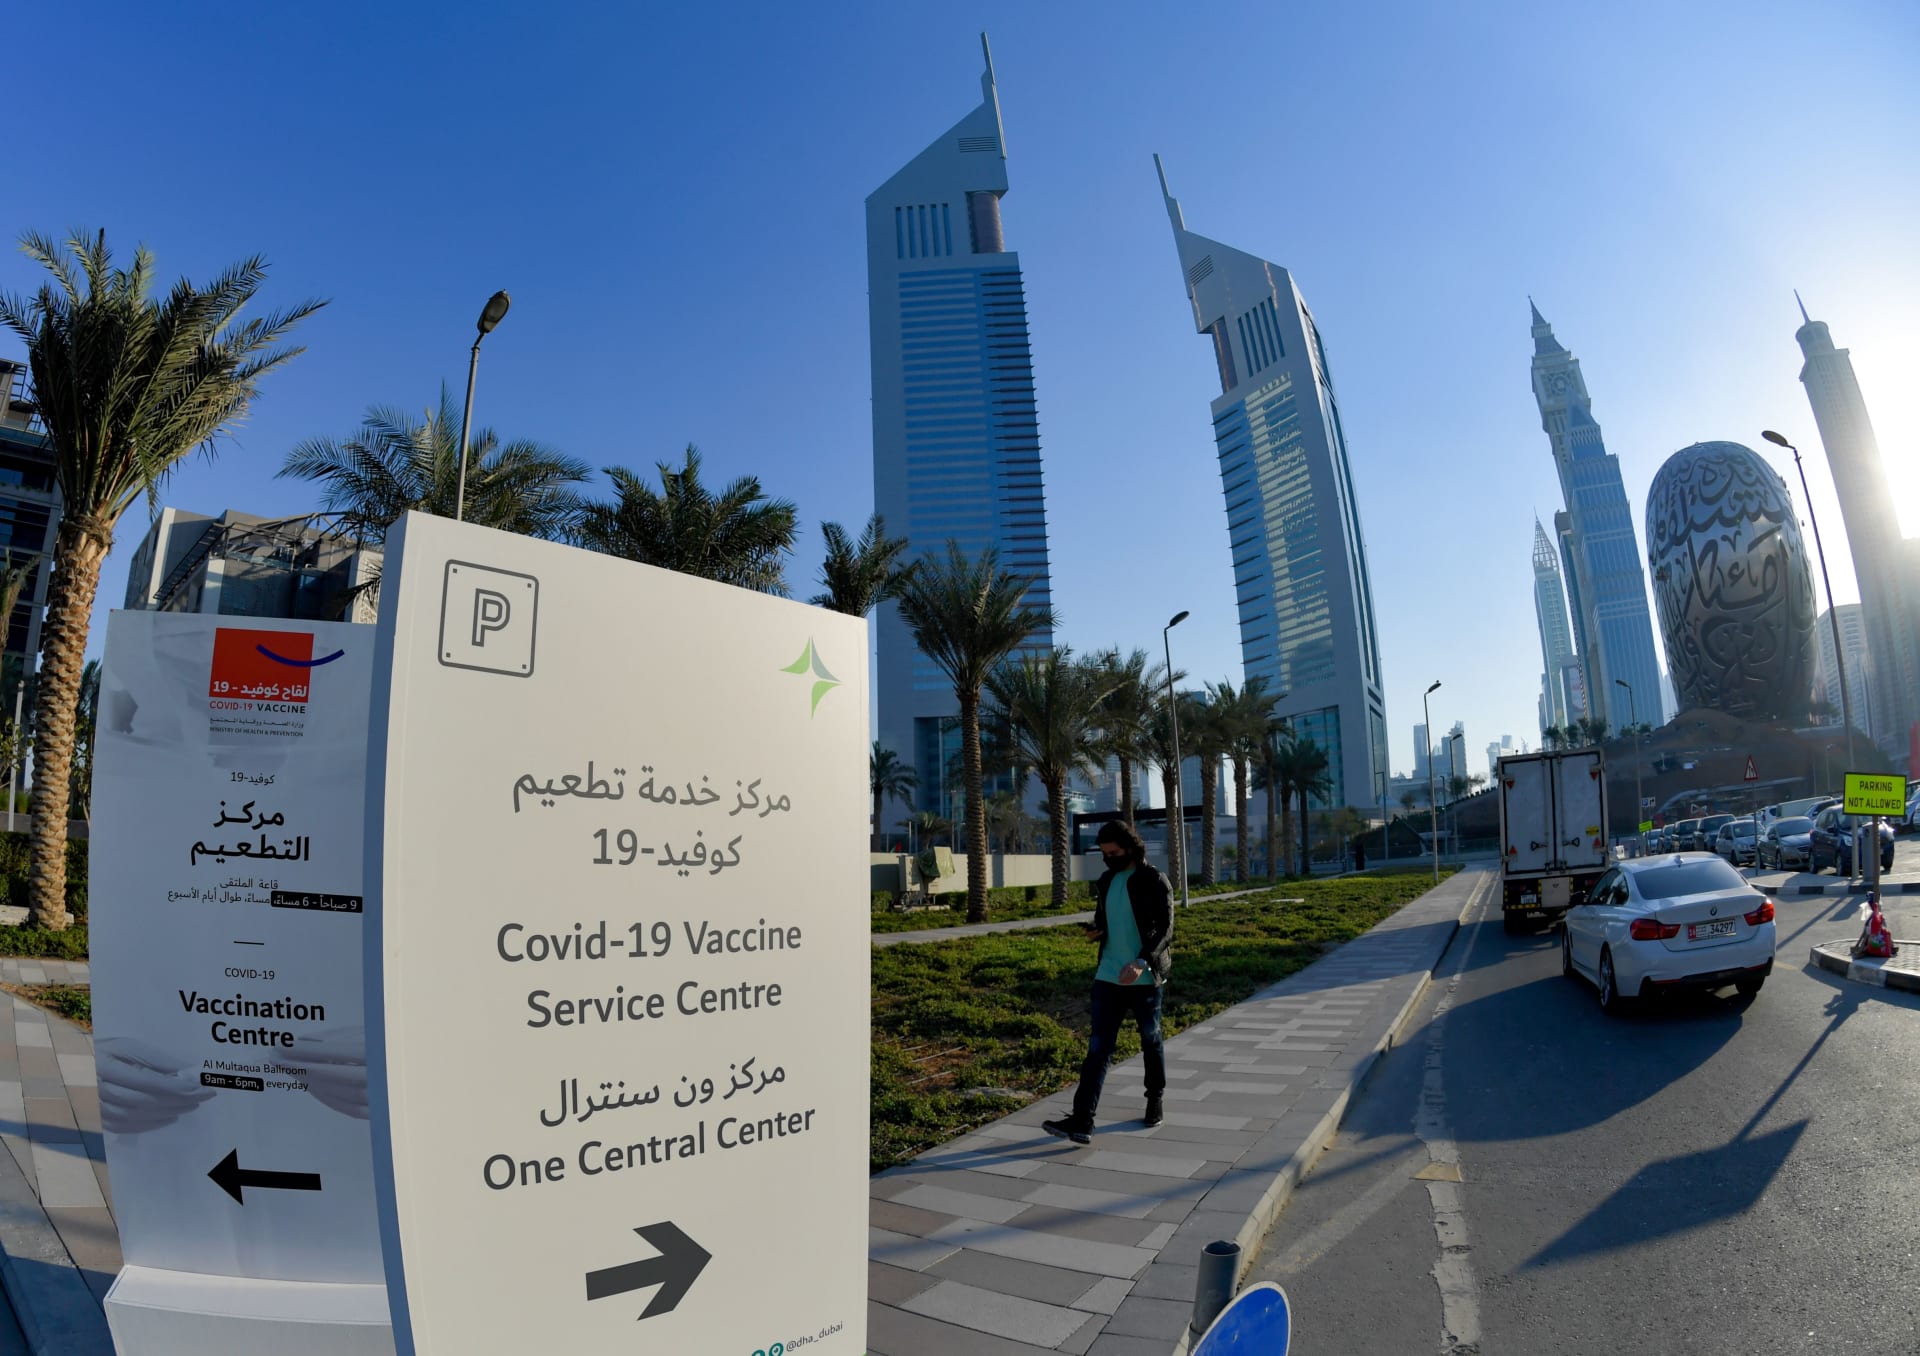 لوحة تشير إلى الطريق إلى مركز تطعيم ضد فيروس كورونا، تم إنشاؤه في مركز دبي المالي العالمي في إمارة دبي، في 3 فبراير 2021